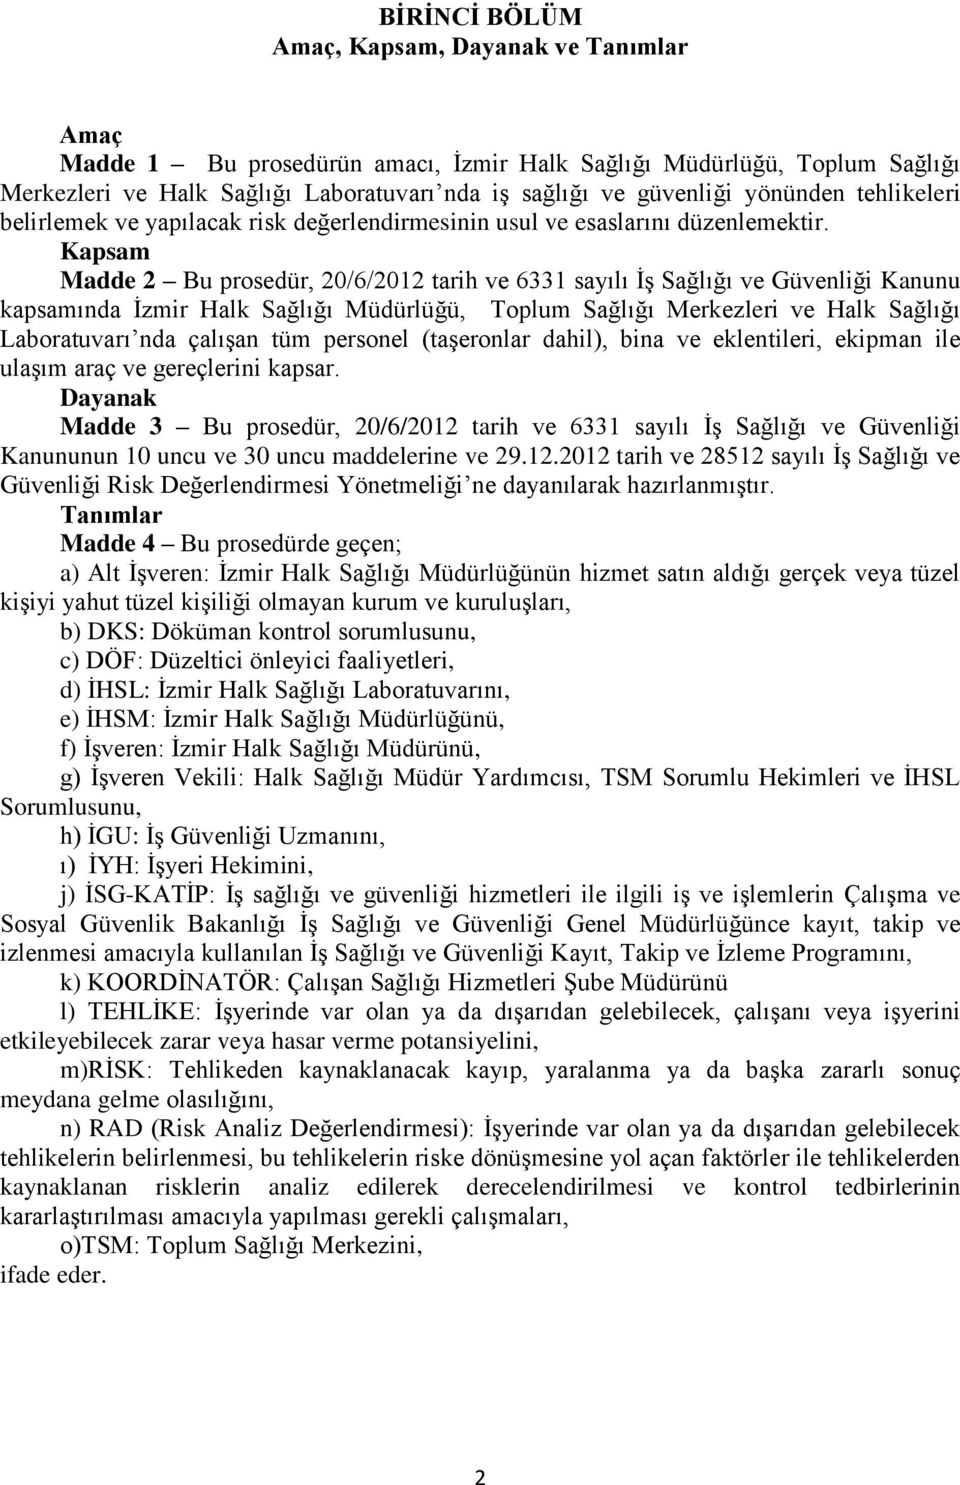 Kapsam Madde 2 Bu prosedür, 20/6/2012 tarih ve 6331 sayılı İş Sağlığı ve Güvenliği Kanunu kapsamında İzmir Halk Sağlığı Müdürlüğü, Toplum Sağlığı Merkezleri ve Halk Sağlığı Laboratuvarı nda çalışan